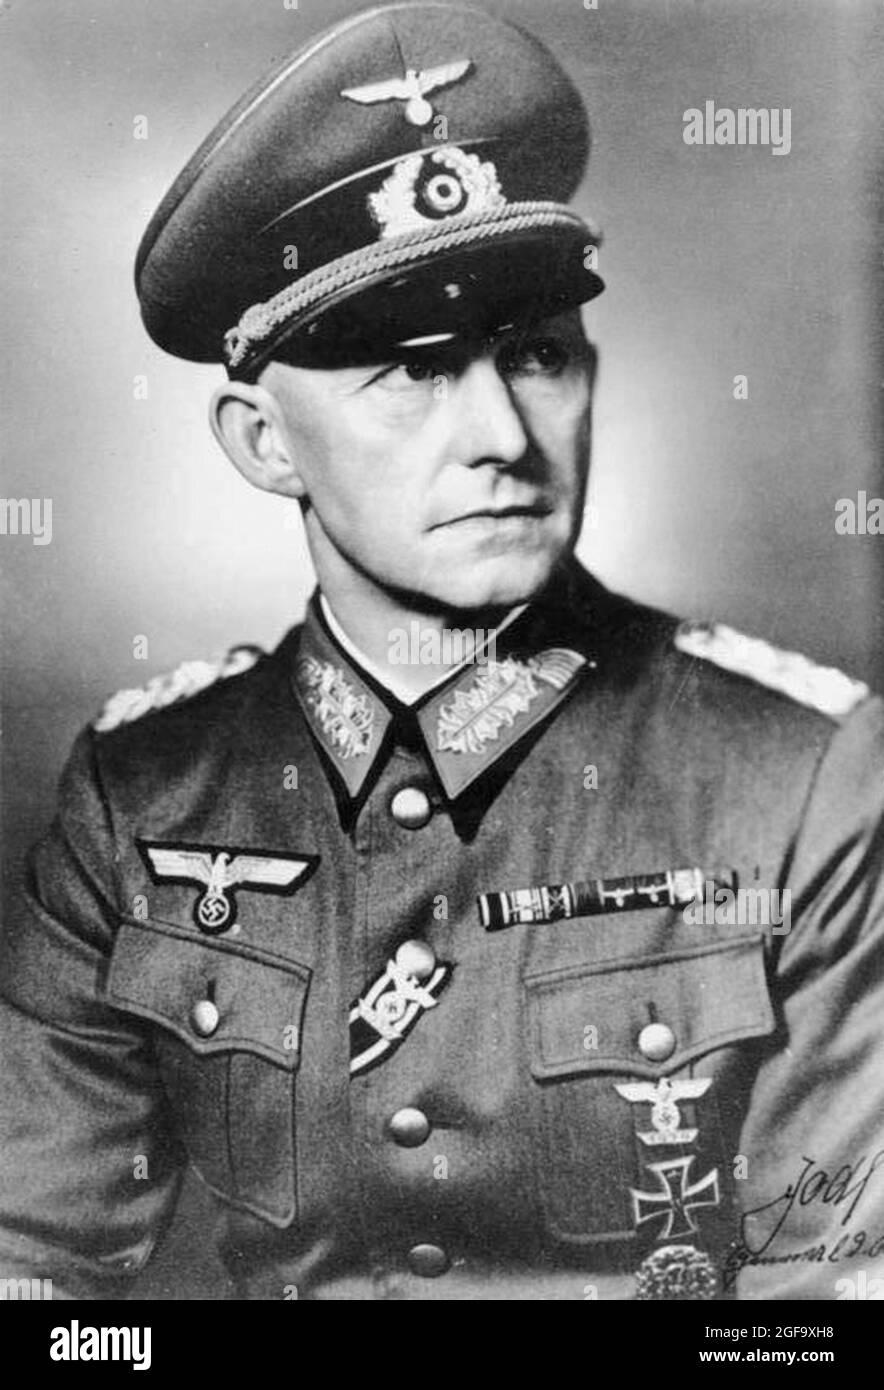 Un portrait du chef d'état-major des opérations de l'armée allemande Alfred Jodl. Il a été capturé en 1945, a essayé et pendu à Nuremberg en 1946. Crédit: Bundesarchiv allemand Banque D'Images